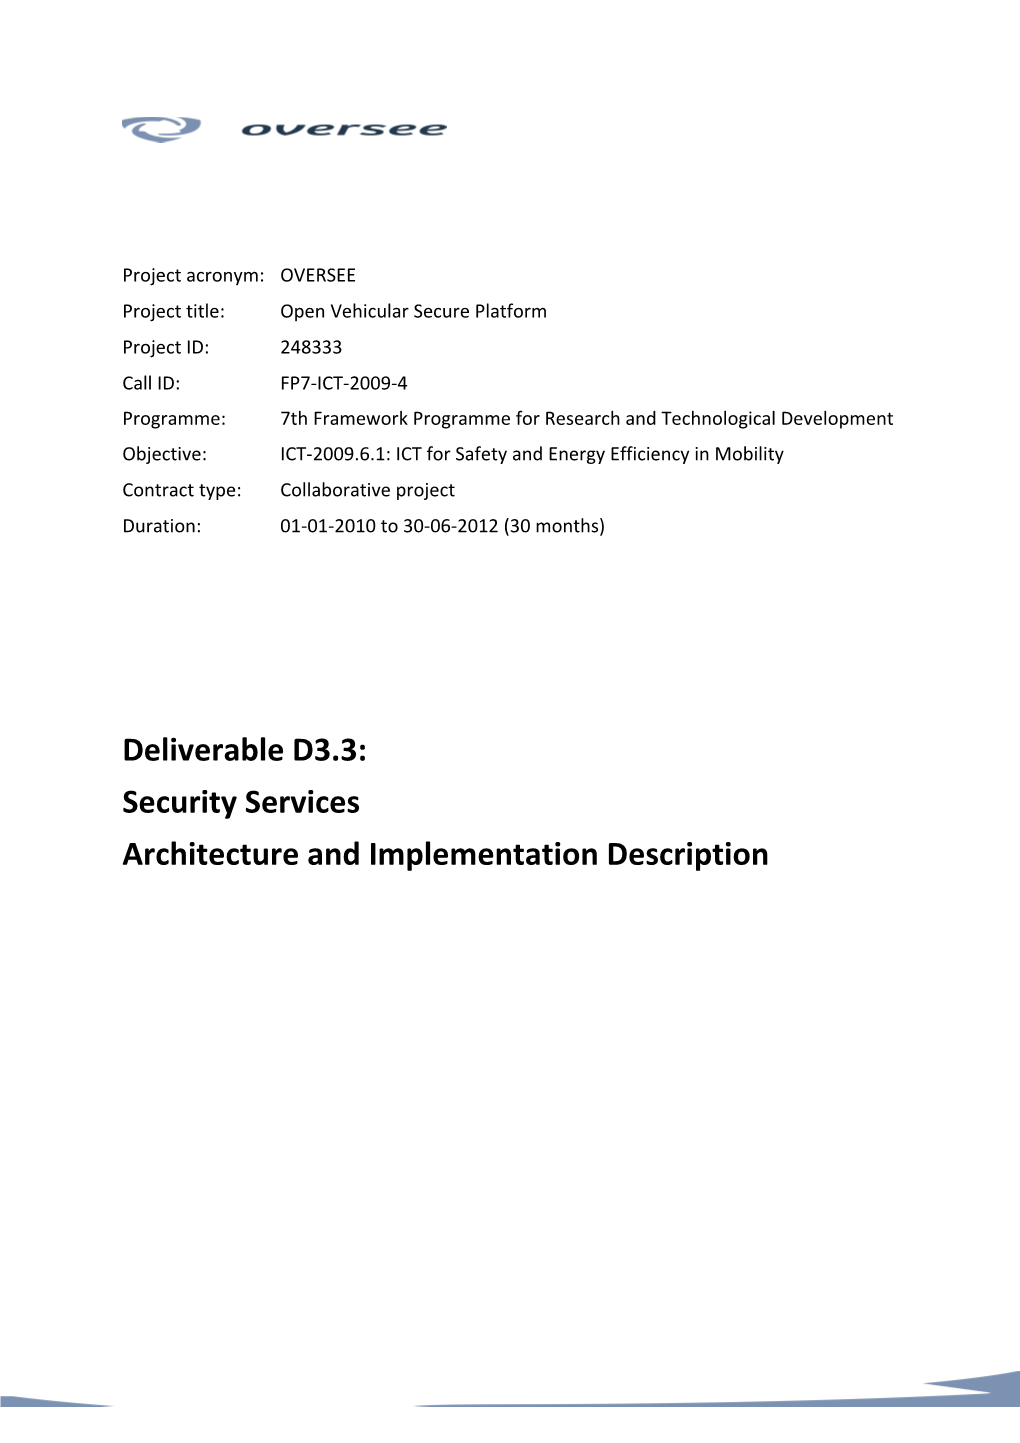 D3.3: Security Services Architecture and Implementation Description